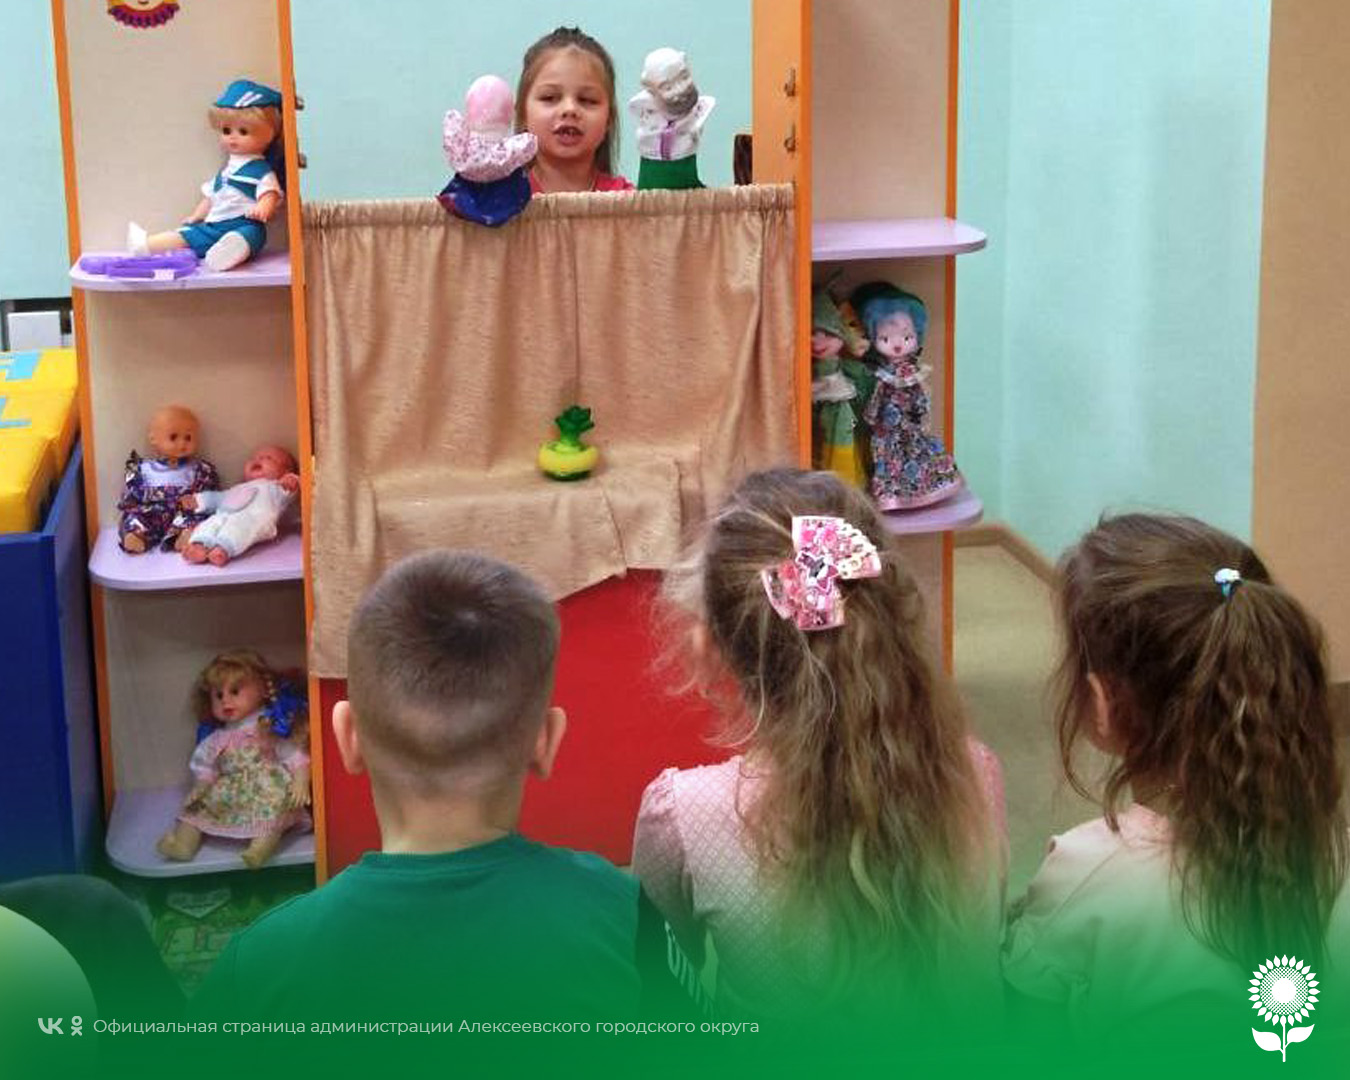 В детских садах Алексеевского городского округа было проведено тематическое мероприятие «Калейдоскоп увлечений»